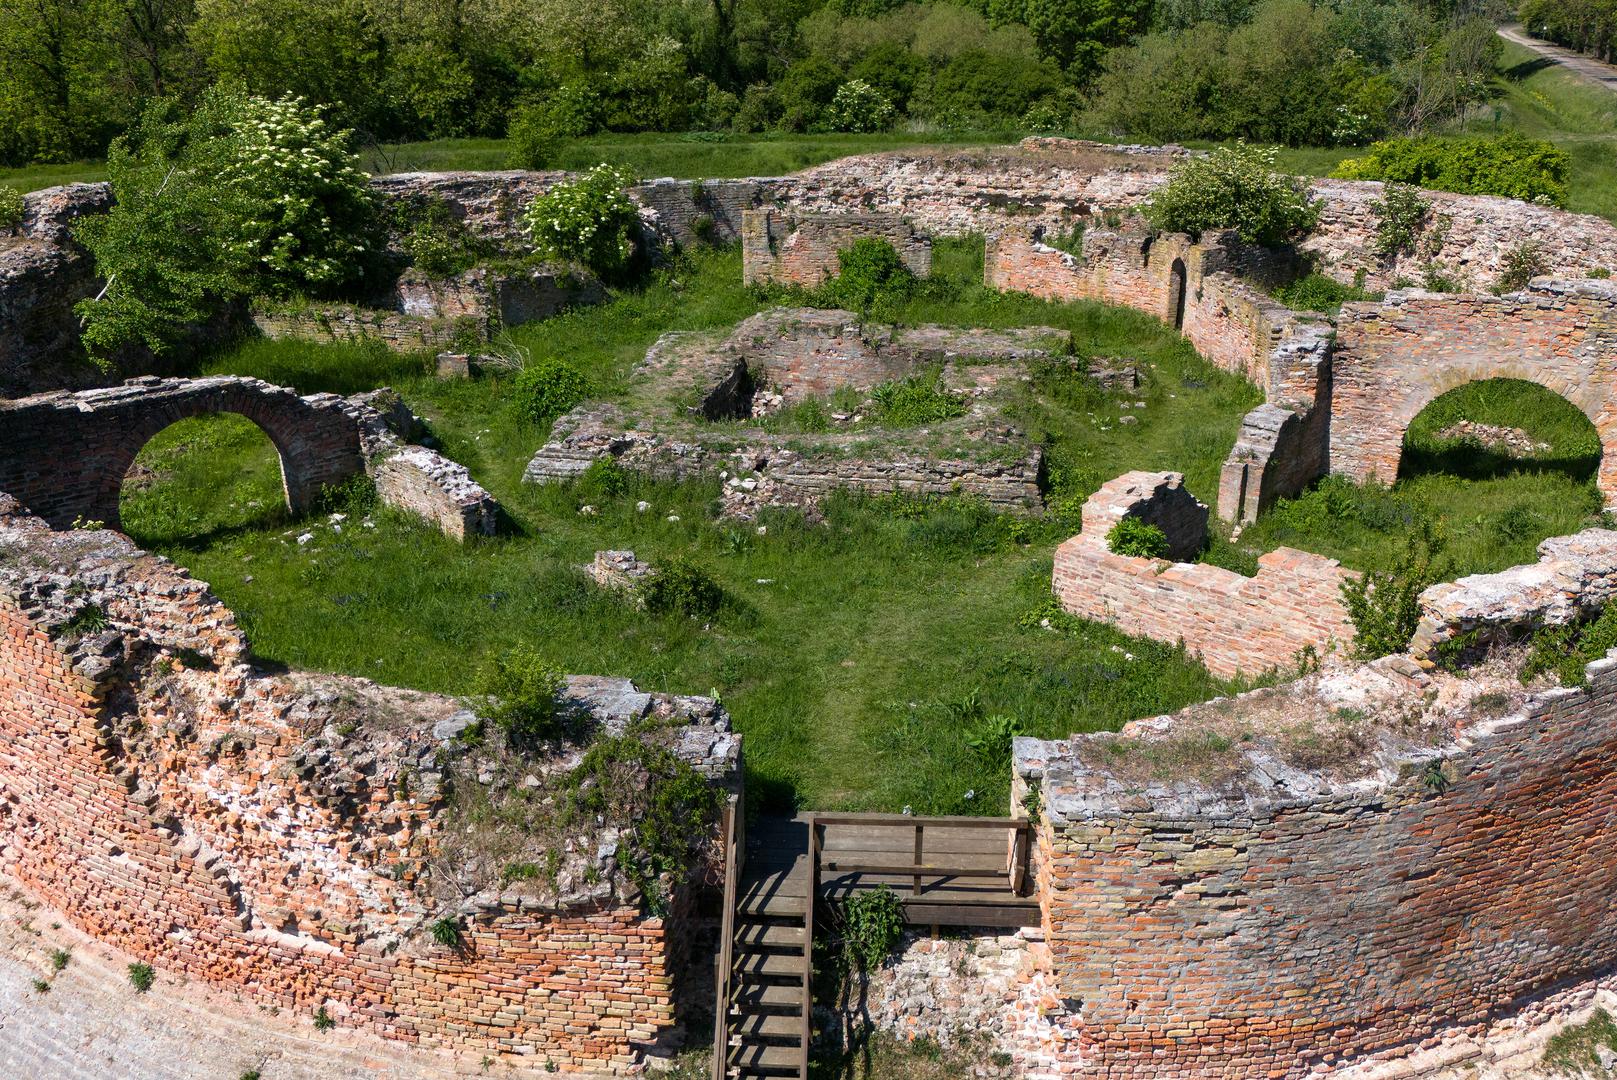 Povjesničari smatraju da je zidine podigla obitelj Korogy na mjestu rimske utvrde oko 1250. godine, a služile su za obranu od najezde Tatara.

